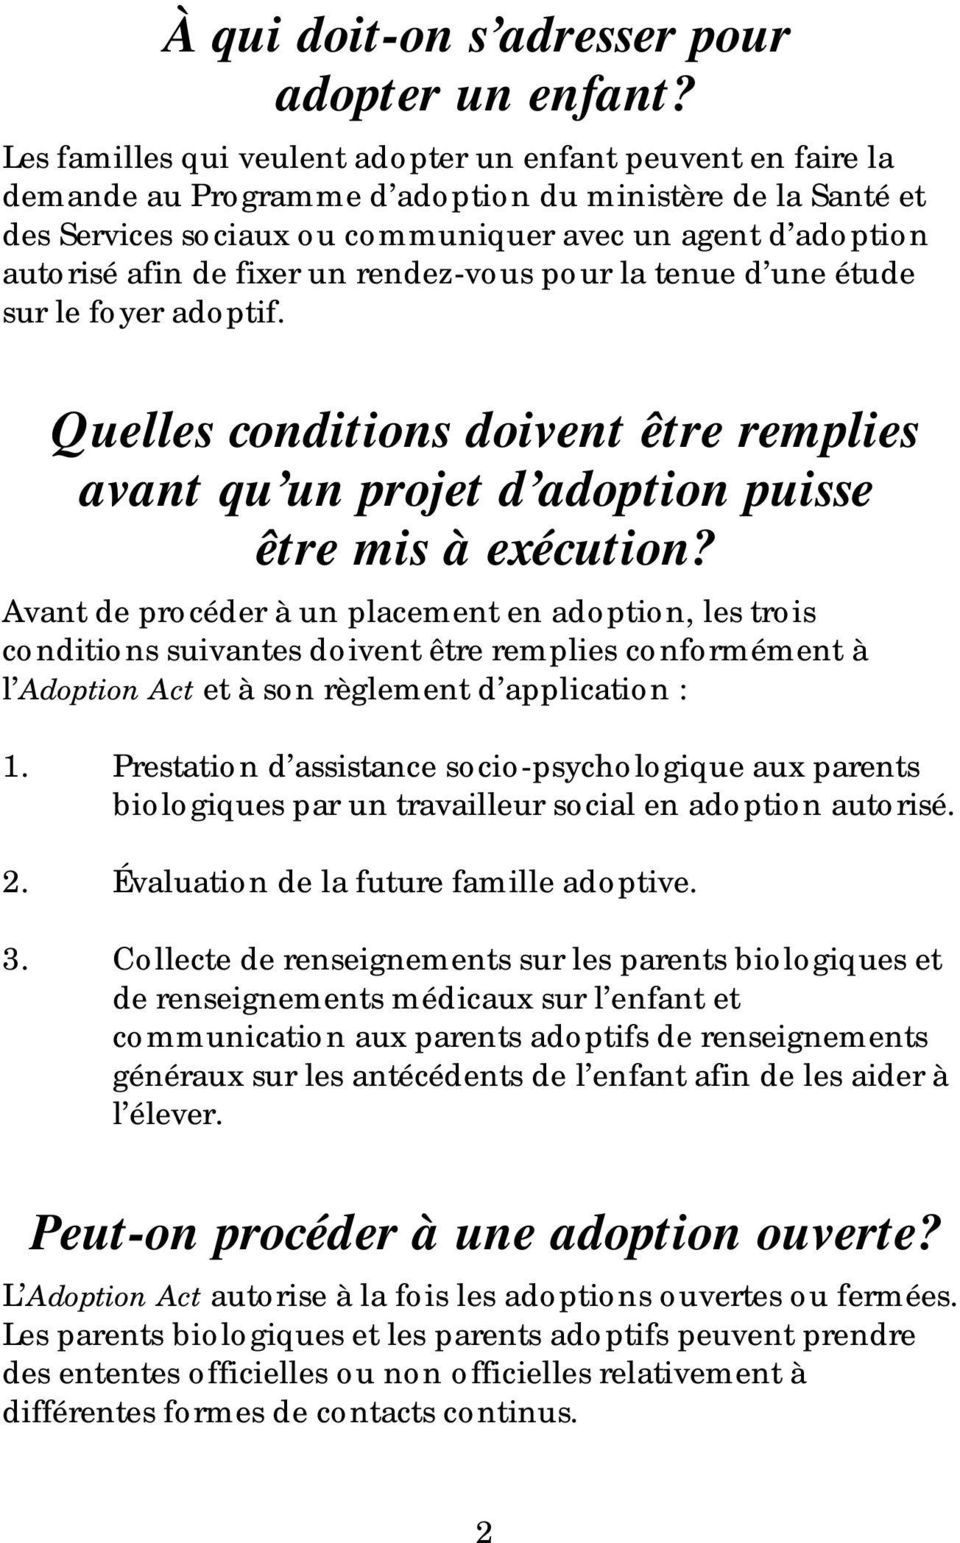 de fixer un rendez-vous pour la tenue d une étude sur le foyer adoptif. Quelles conditions doivent être remplies avant qu un projet d adoption puisse être mis à exécution?